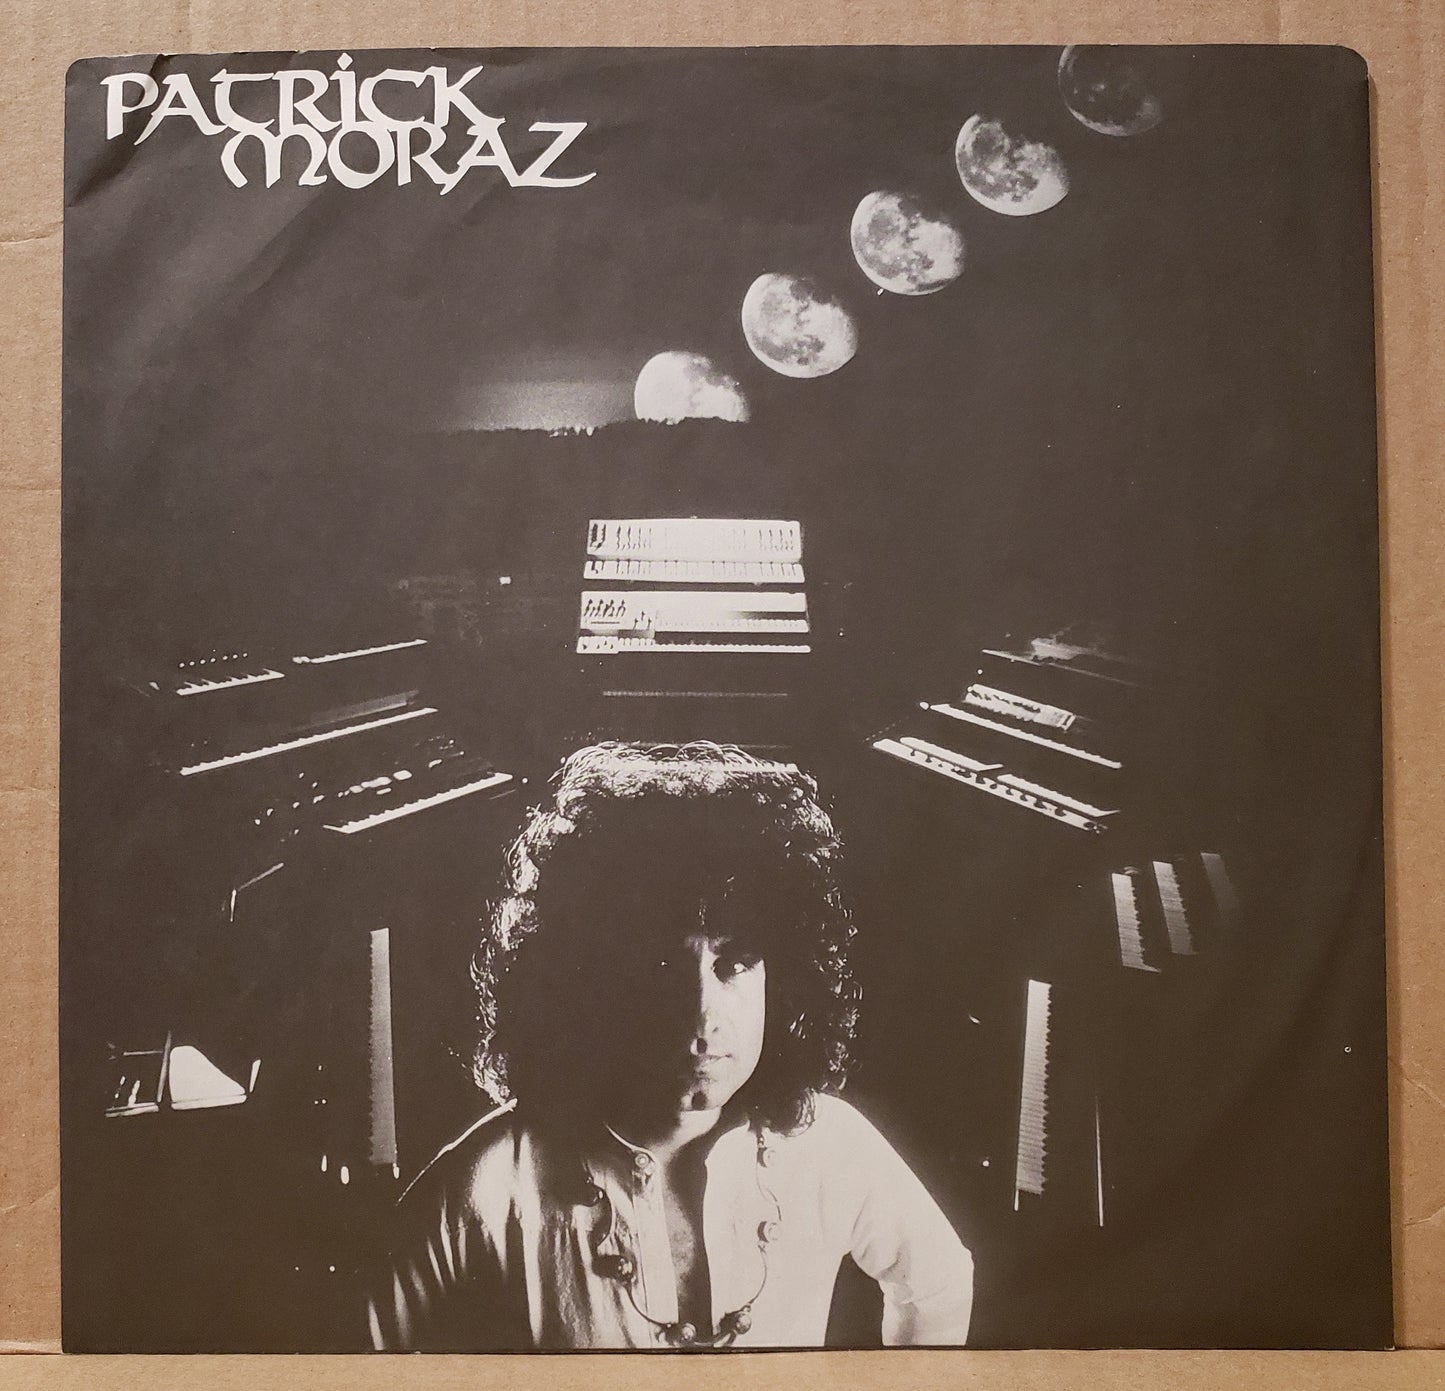 Patrick Moraz - Patrick Moraz [1978 Used Vinyl Record LP]